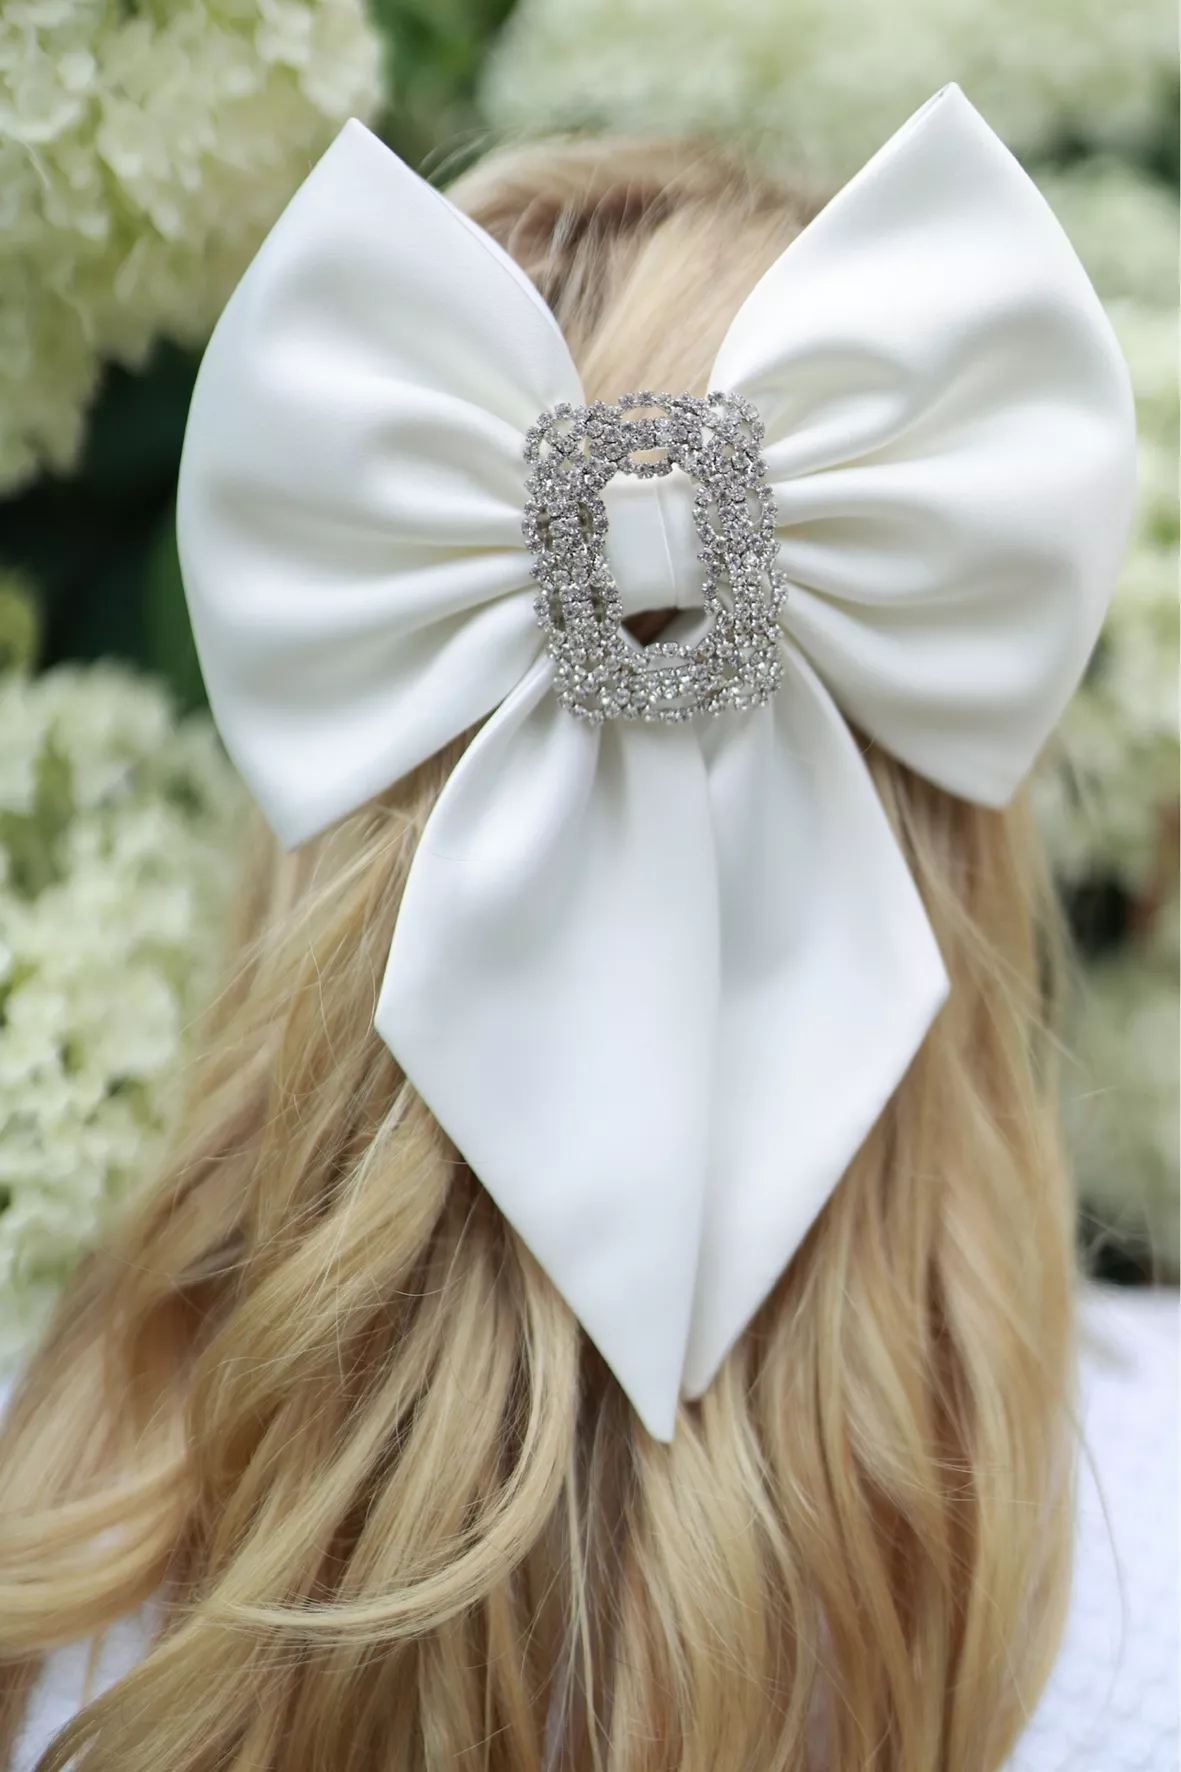 Wedding Hair Accessories - Bridal Hair Accessories